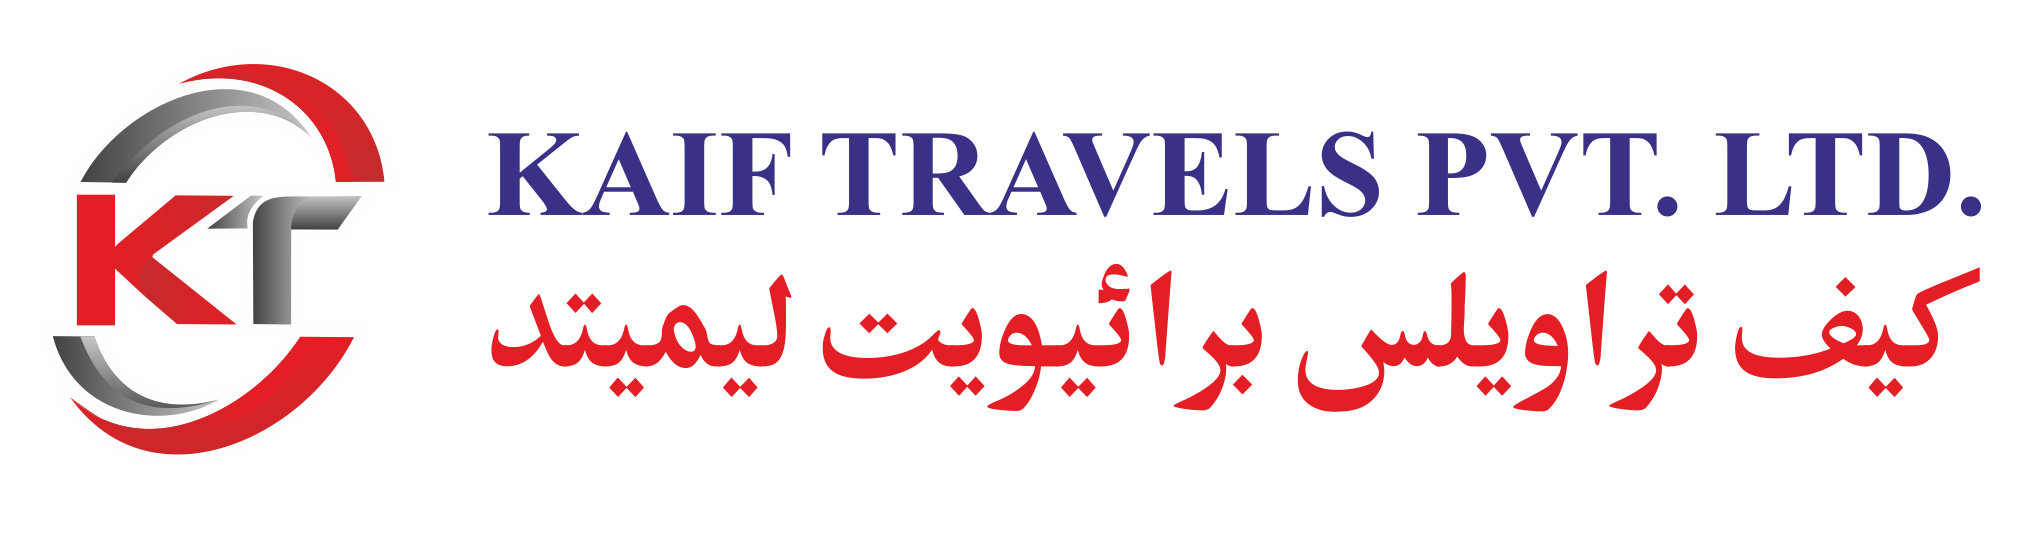 Kaif Travels pvt ltd